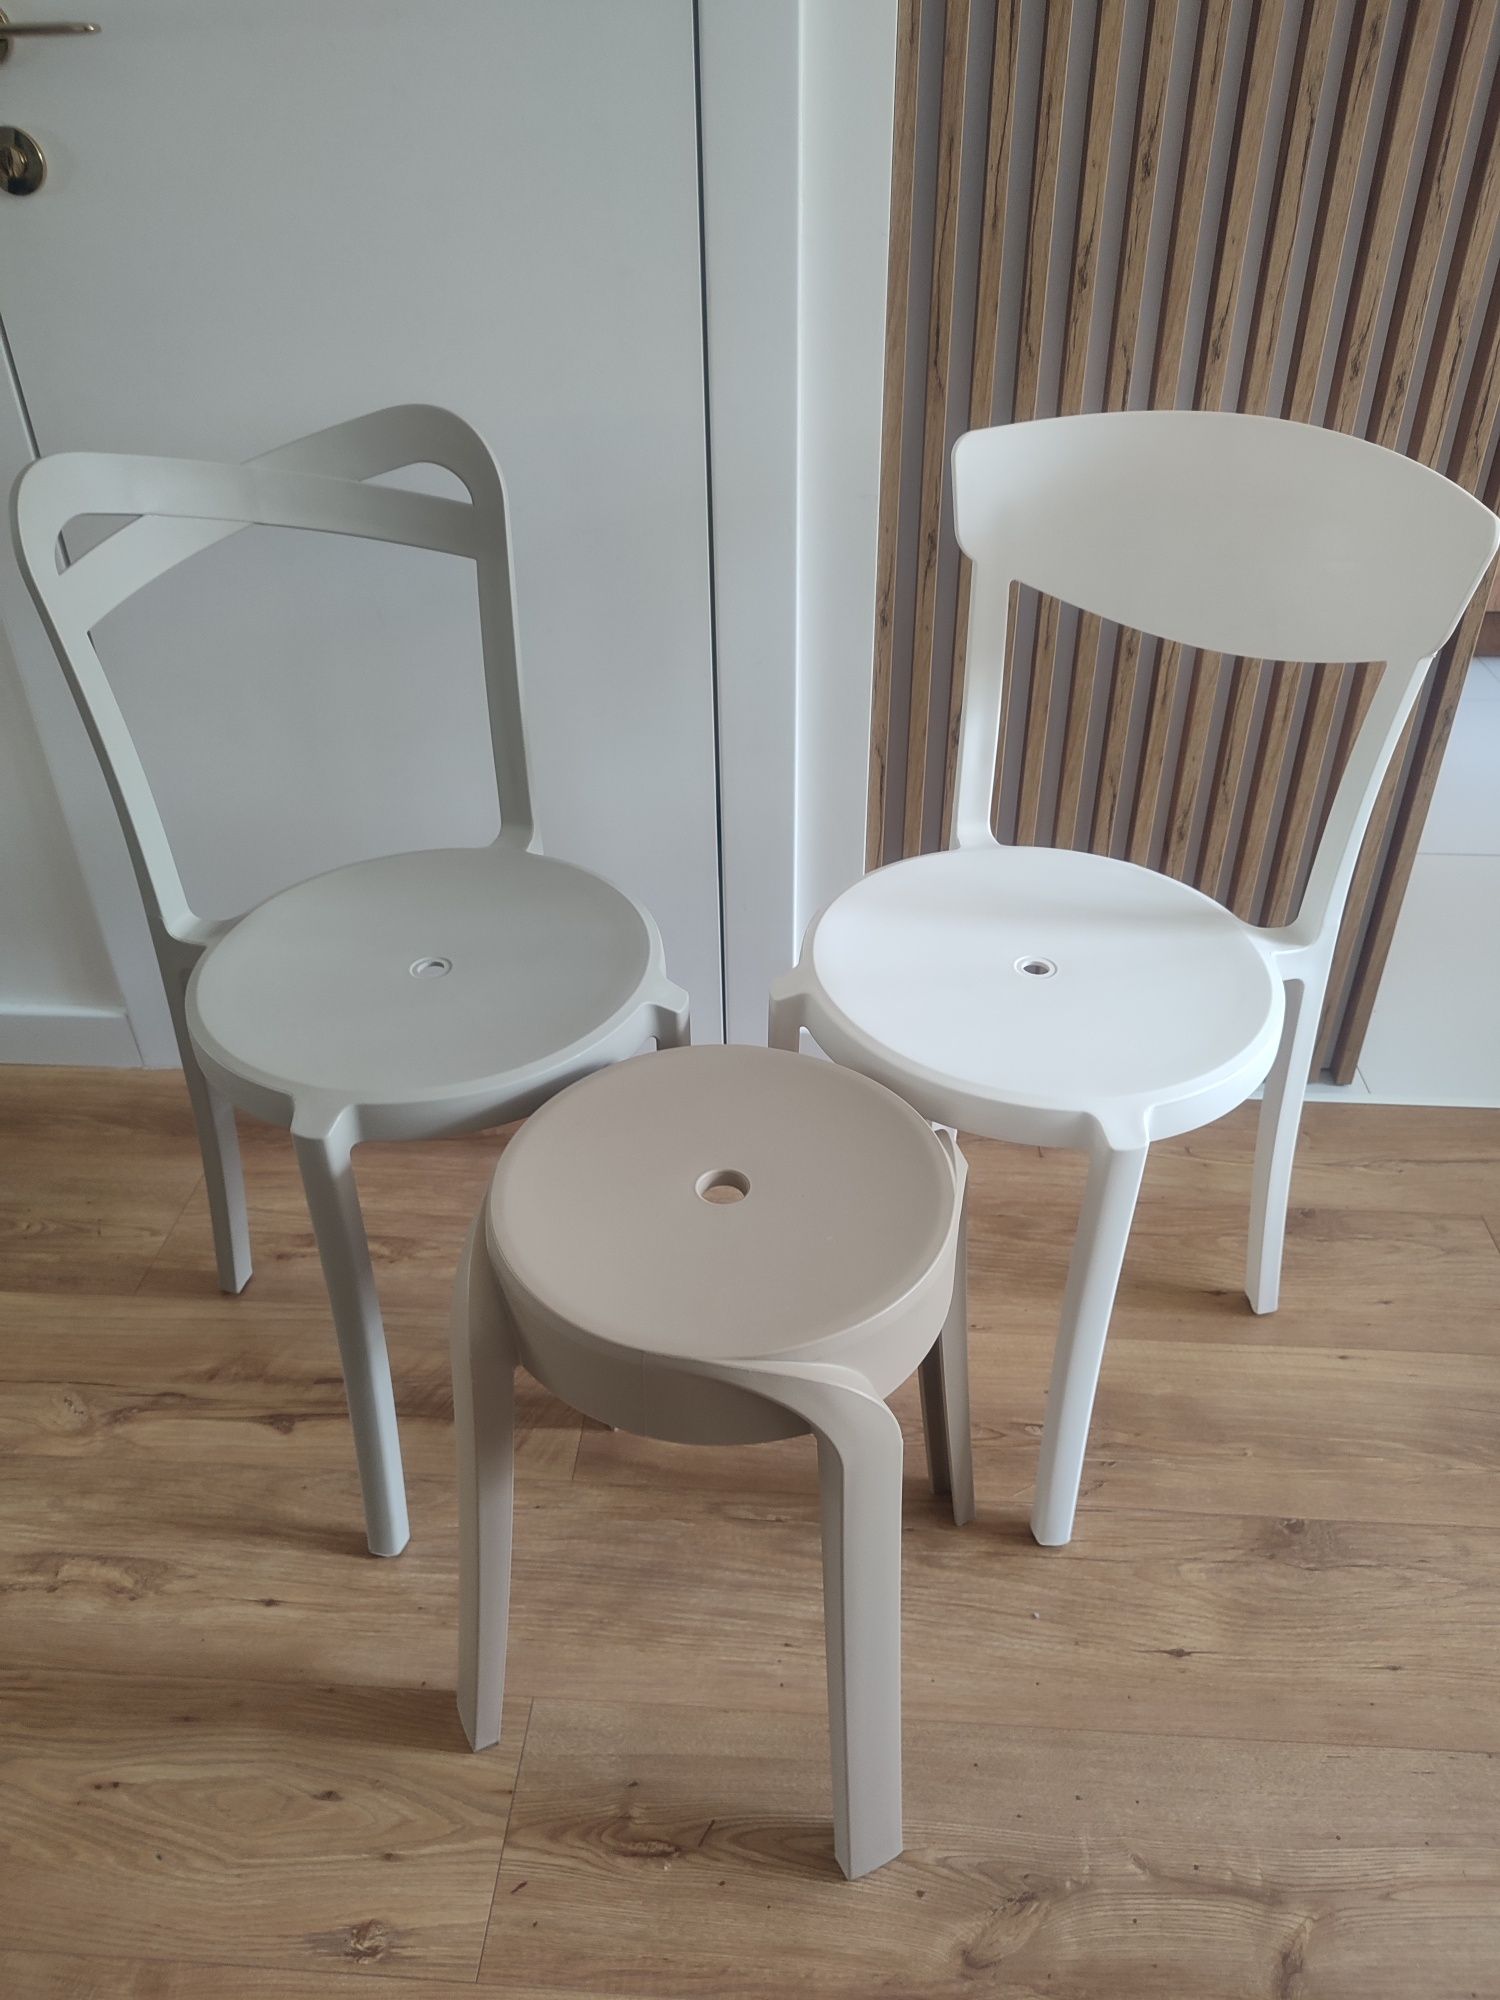 Zestaw 2 krzesła / krzesło + taboret - NOWE-cena za komplet ze zdjecia